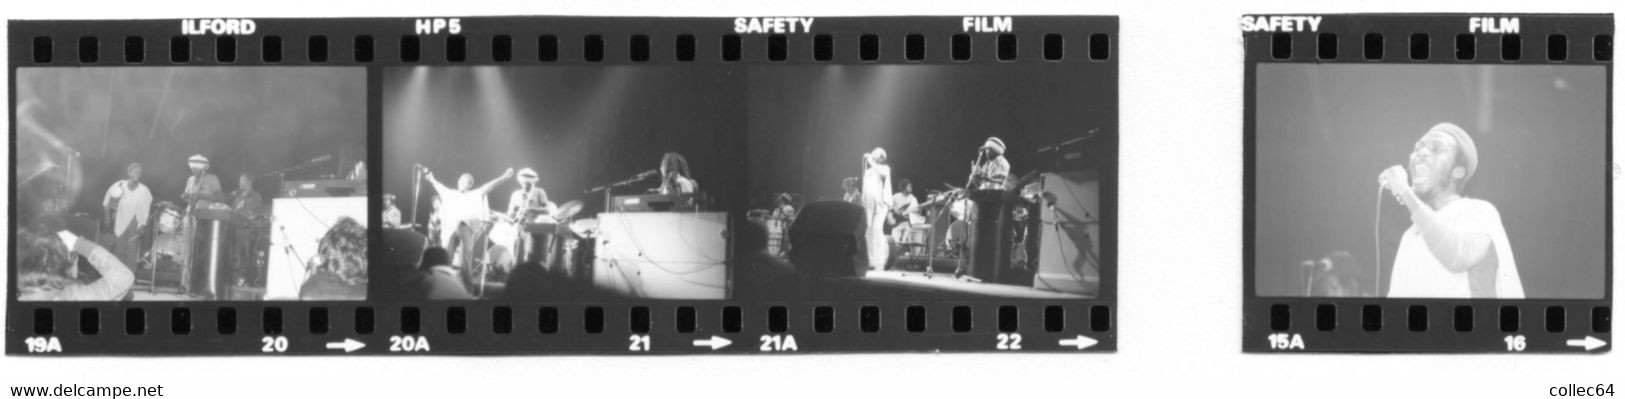 Concert JIMMY CLIFF à Paris En 1979 - 17 Négatifs Originaux - Famous People